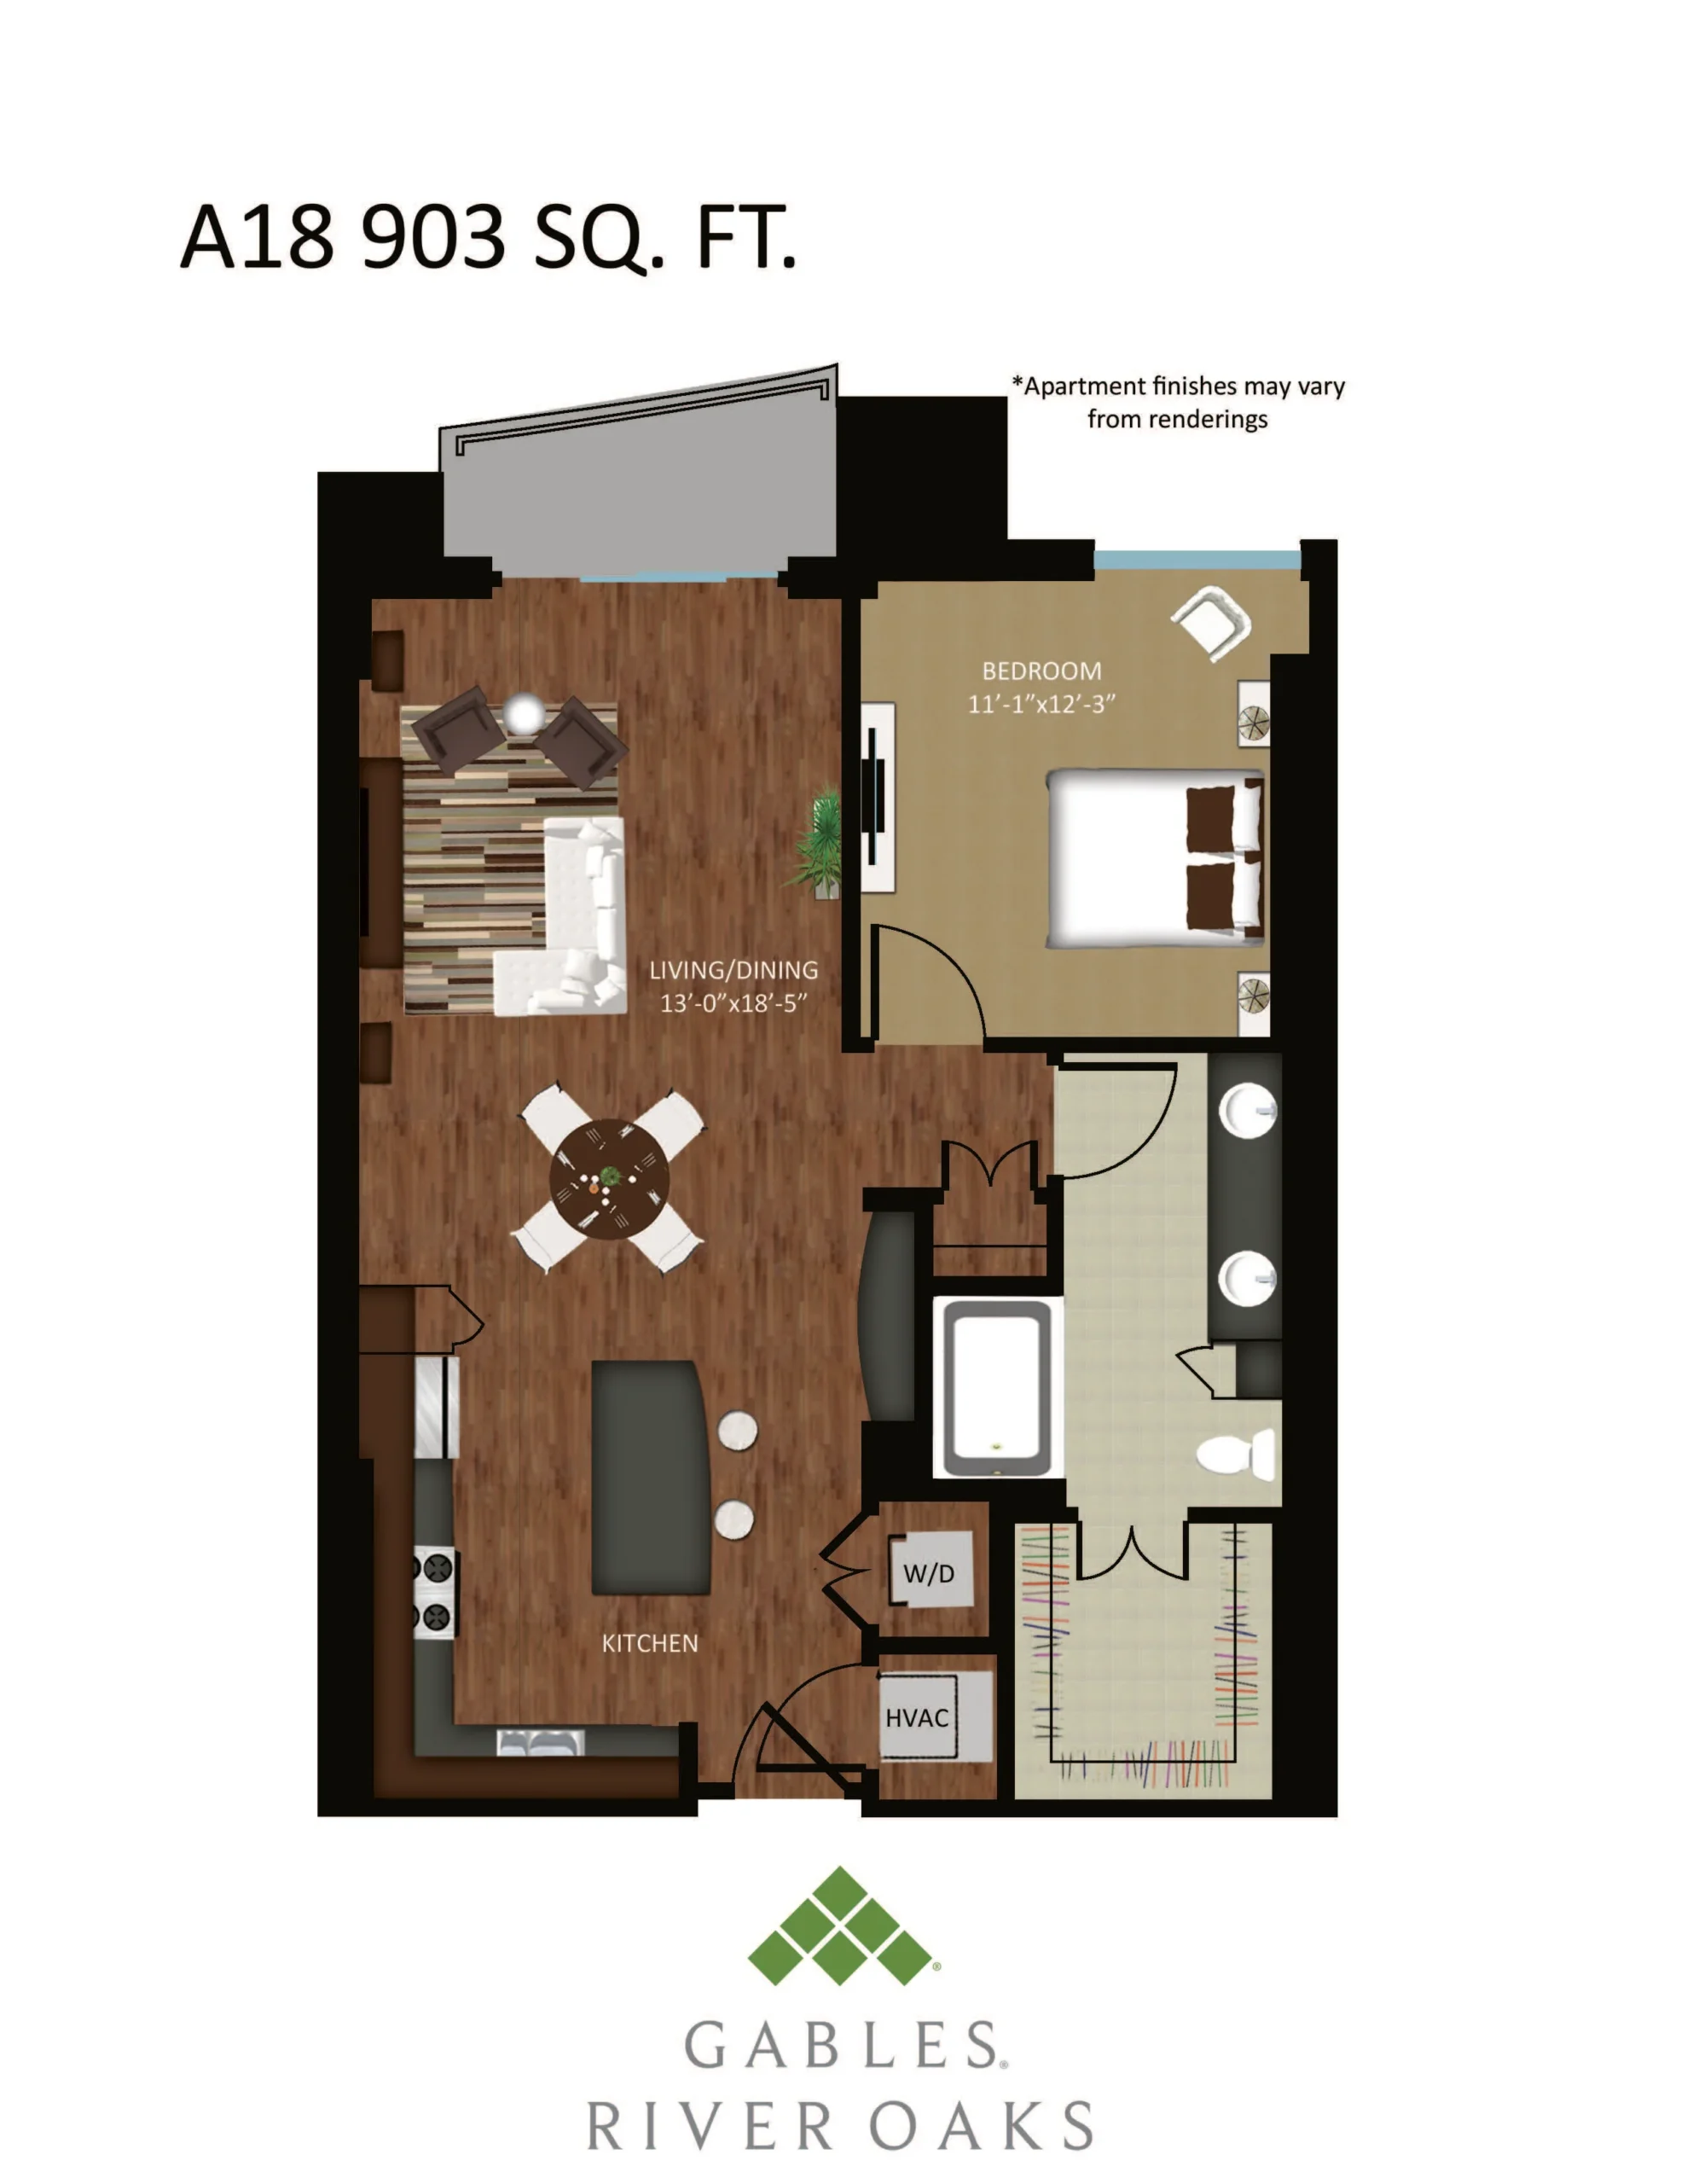 Gables River Oaks Floor Plan 19